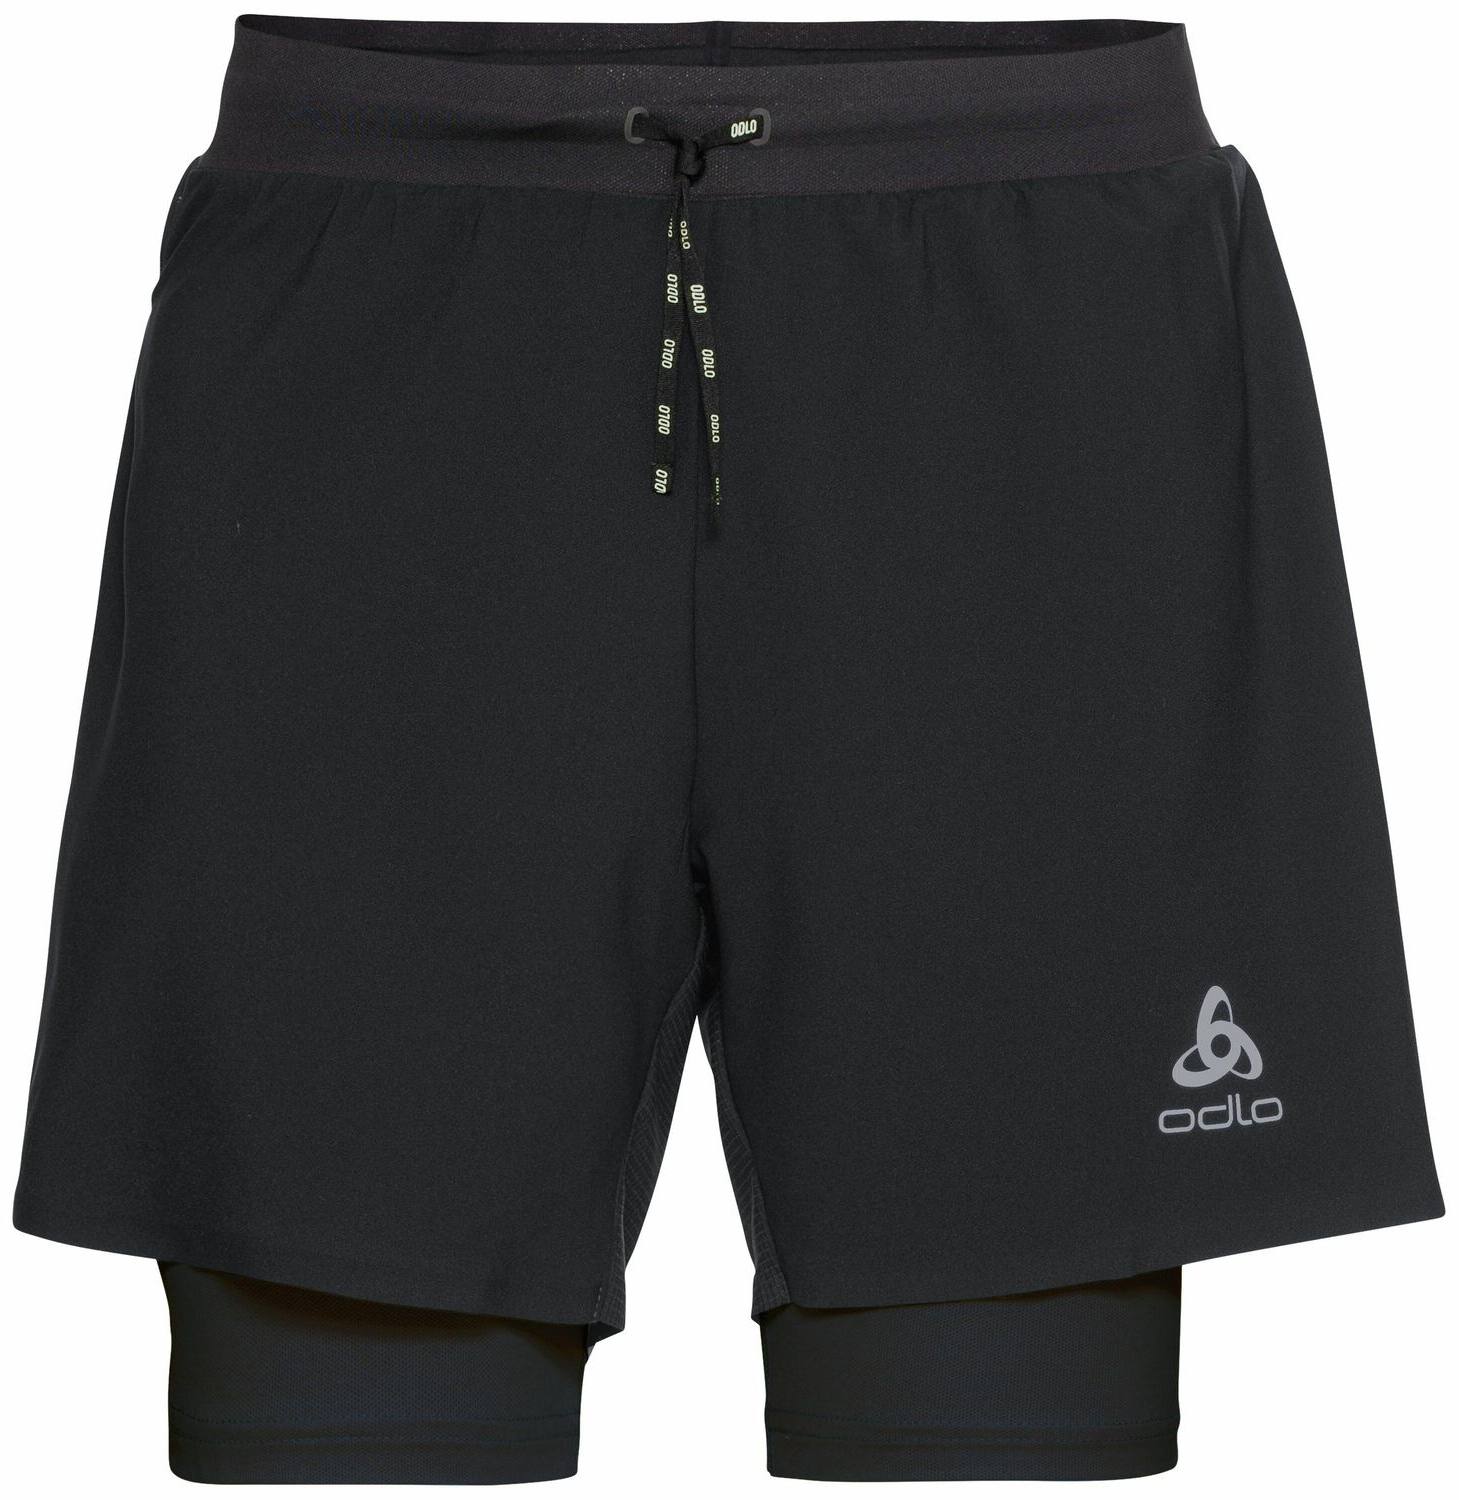 Odlo Axalp Trail 2in1 Shorts 6″